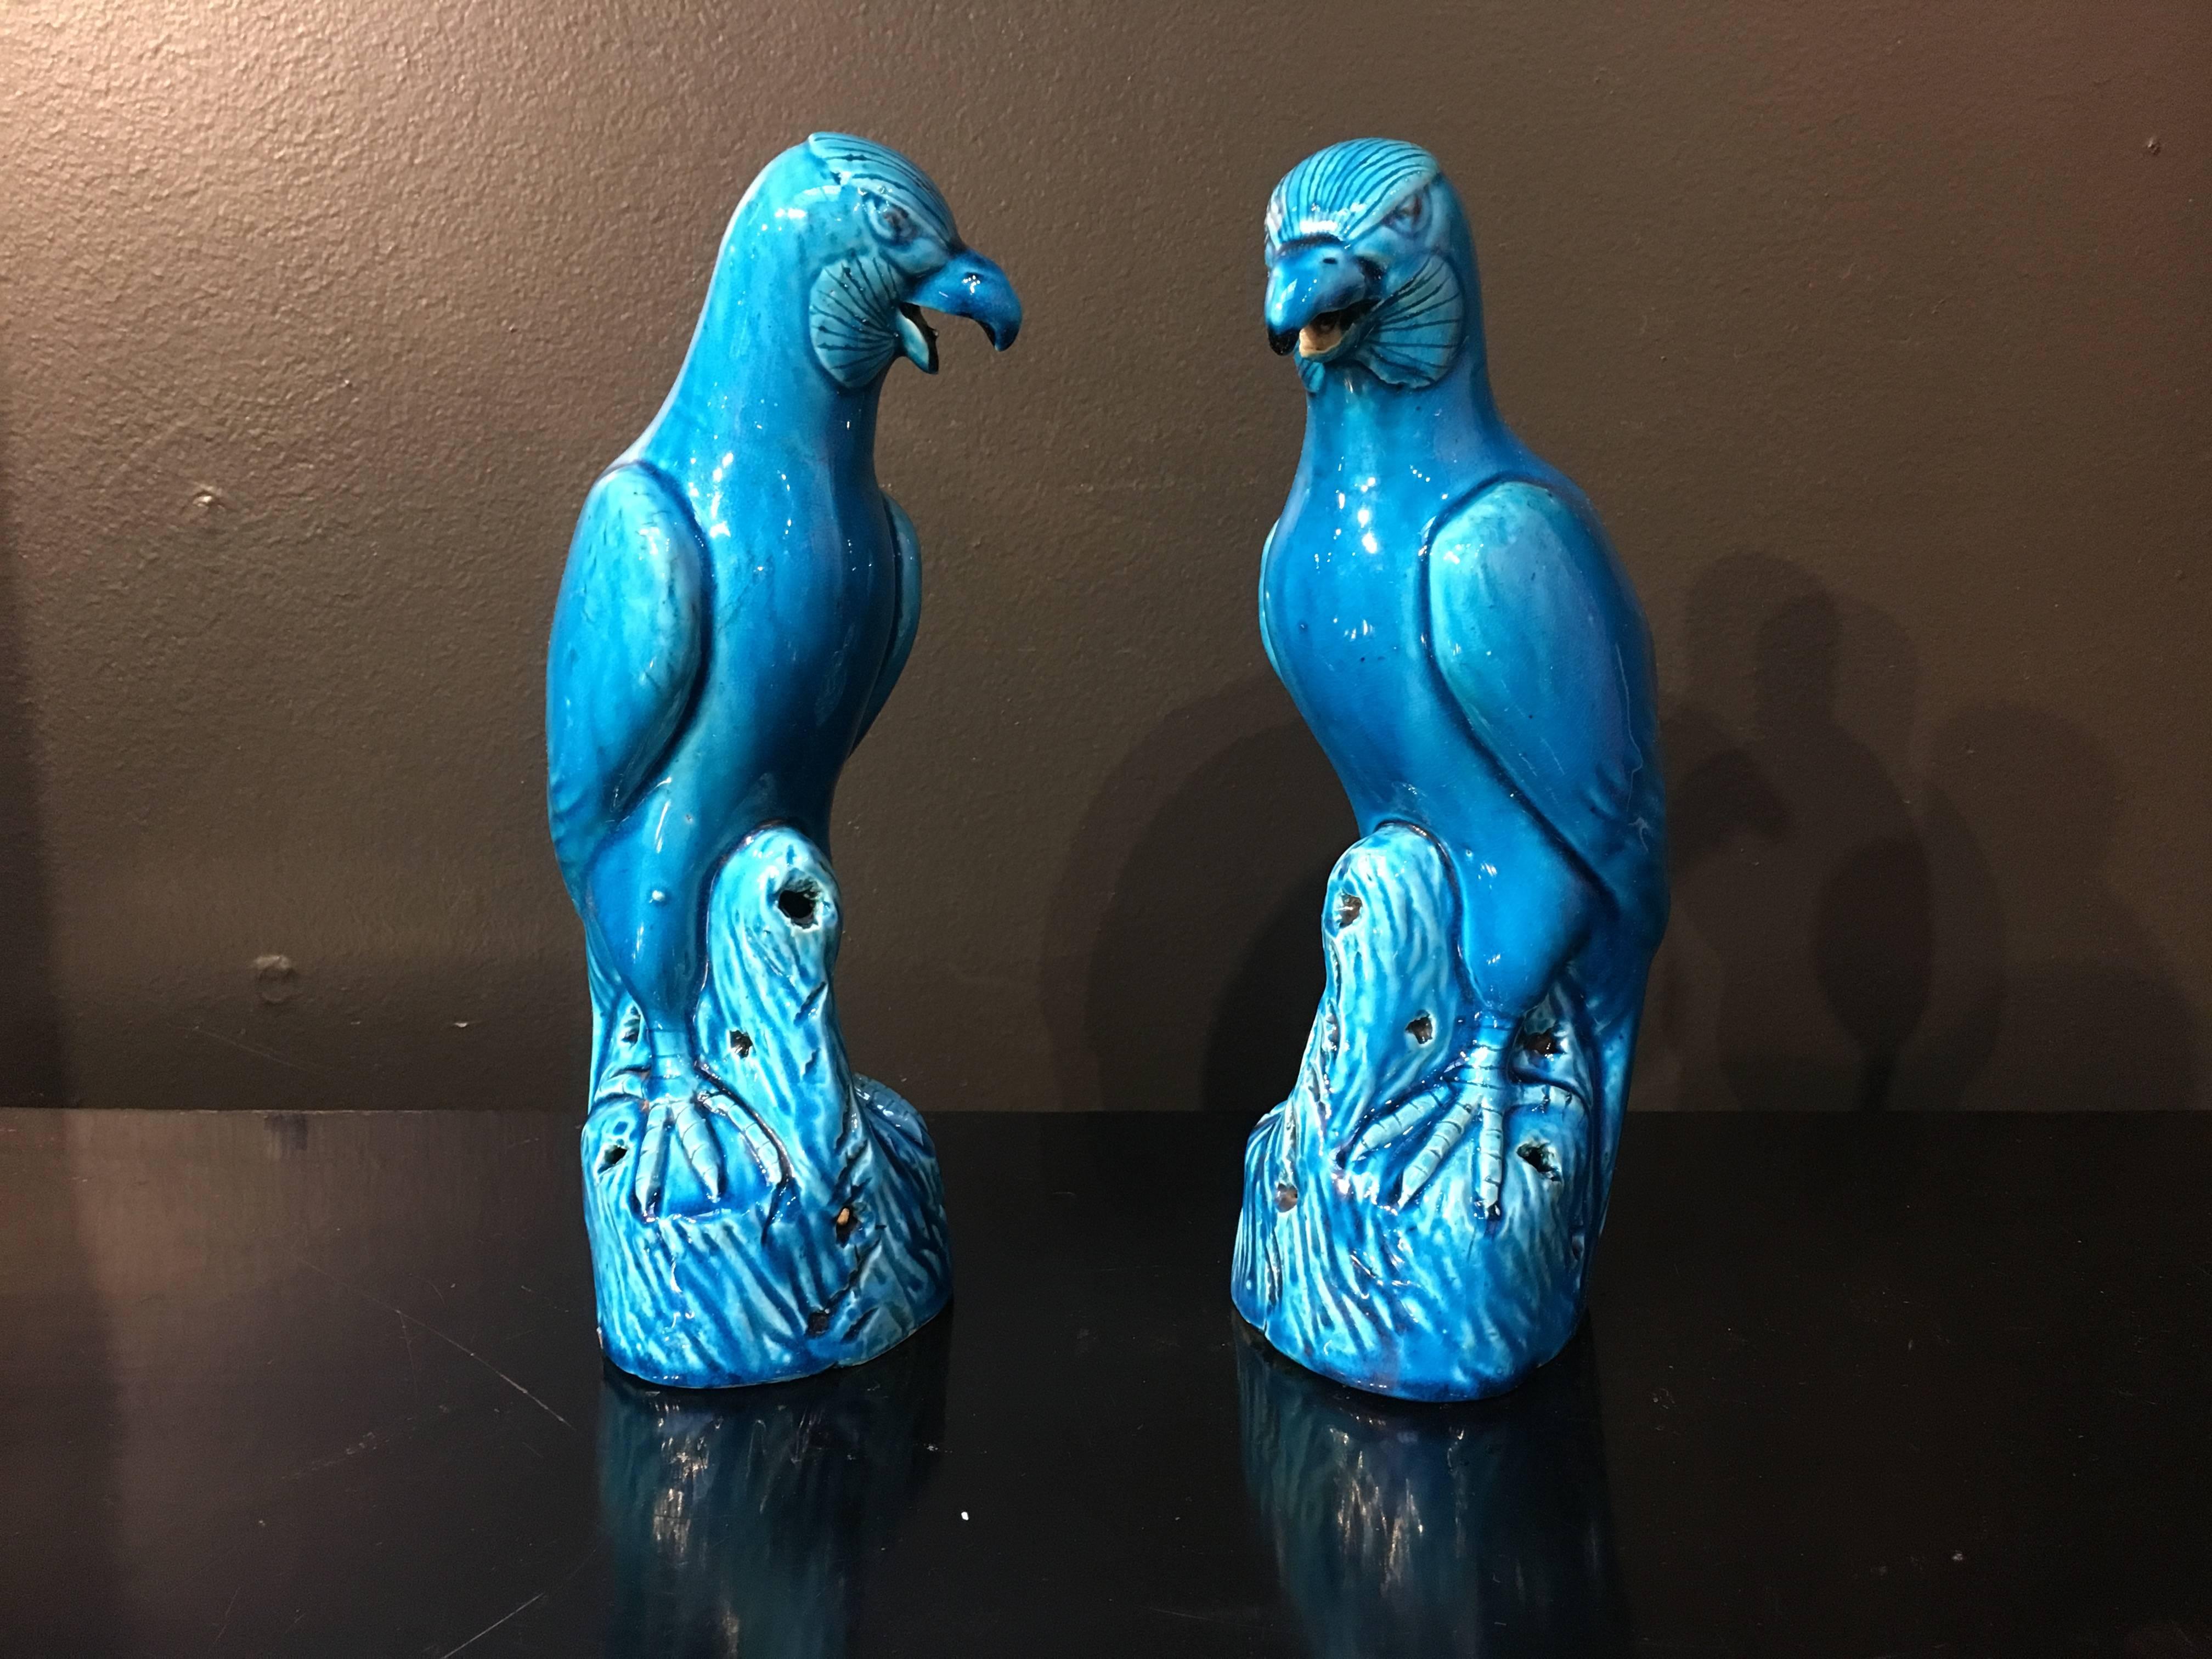 Magnifique paire de modèles de faucons en porcelaine émaillée turquoise, dynastie Qing, fin du XIXe siècle, Chine. 

Les féroces oiseaux de proie sont bien modélisés et représentés perchés sur des affleurements rocheux, la tête légèrement tournée